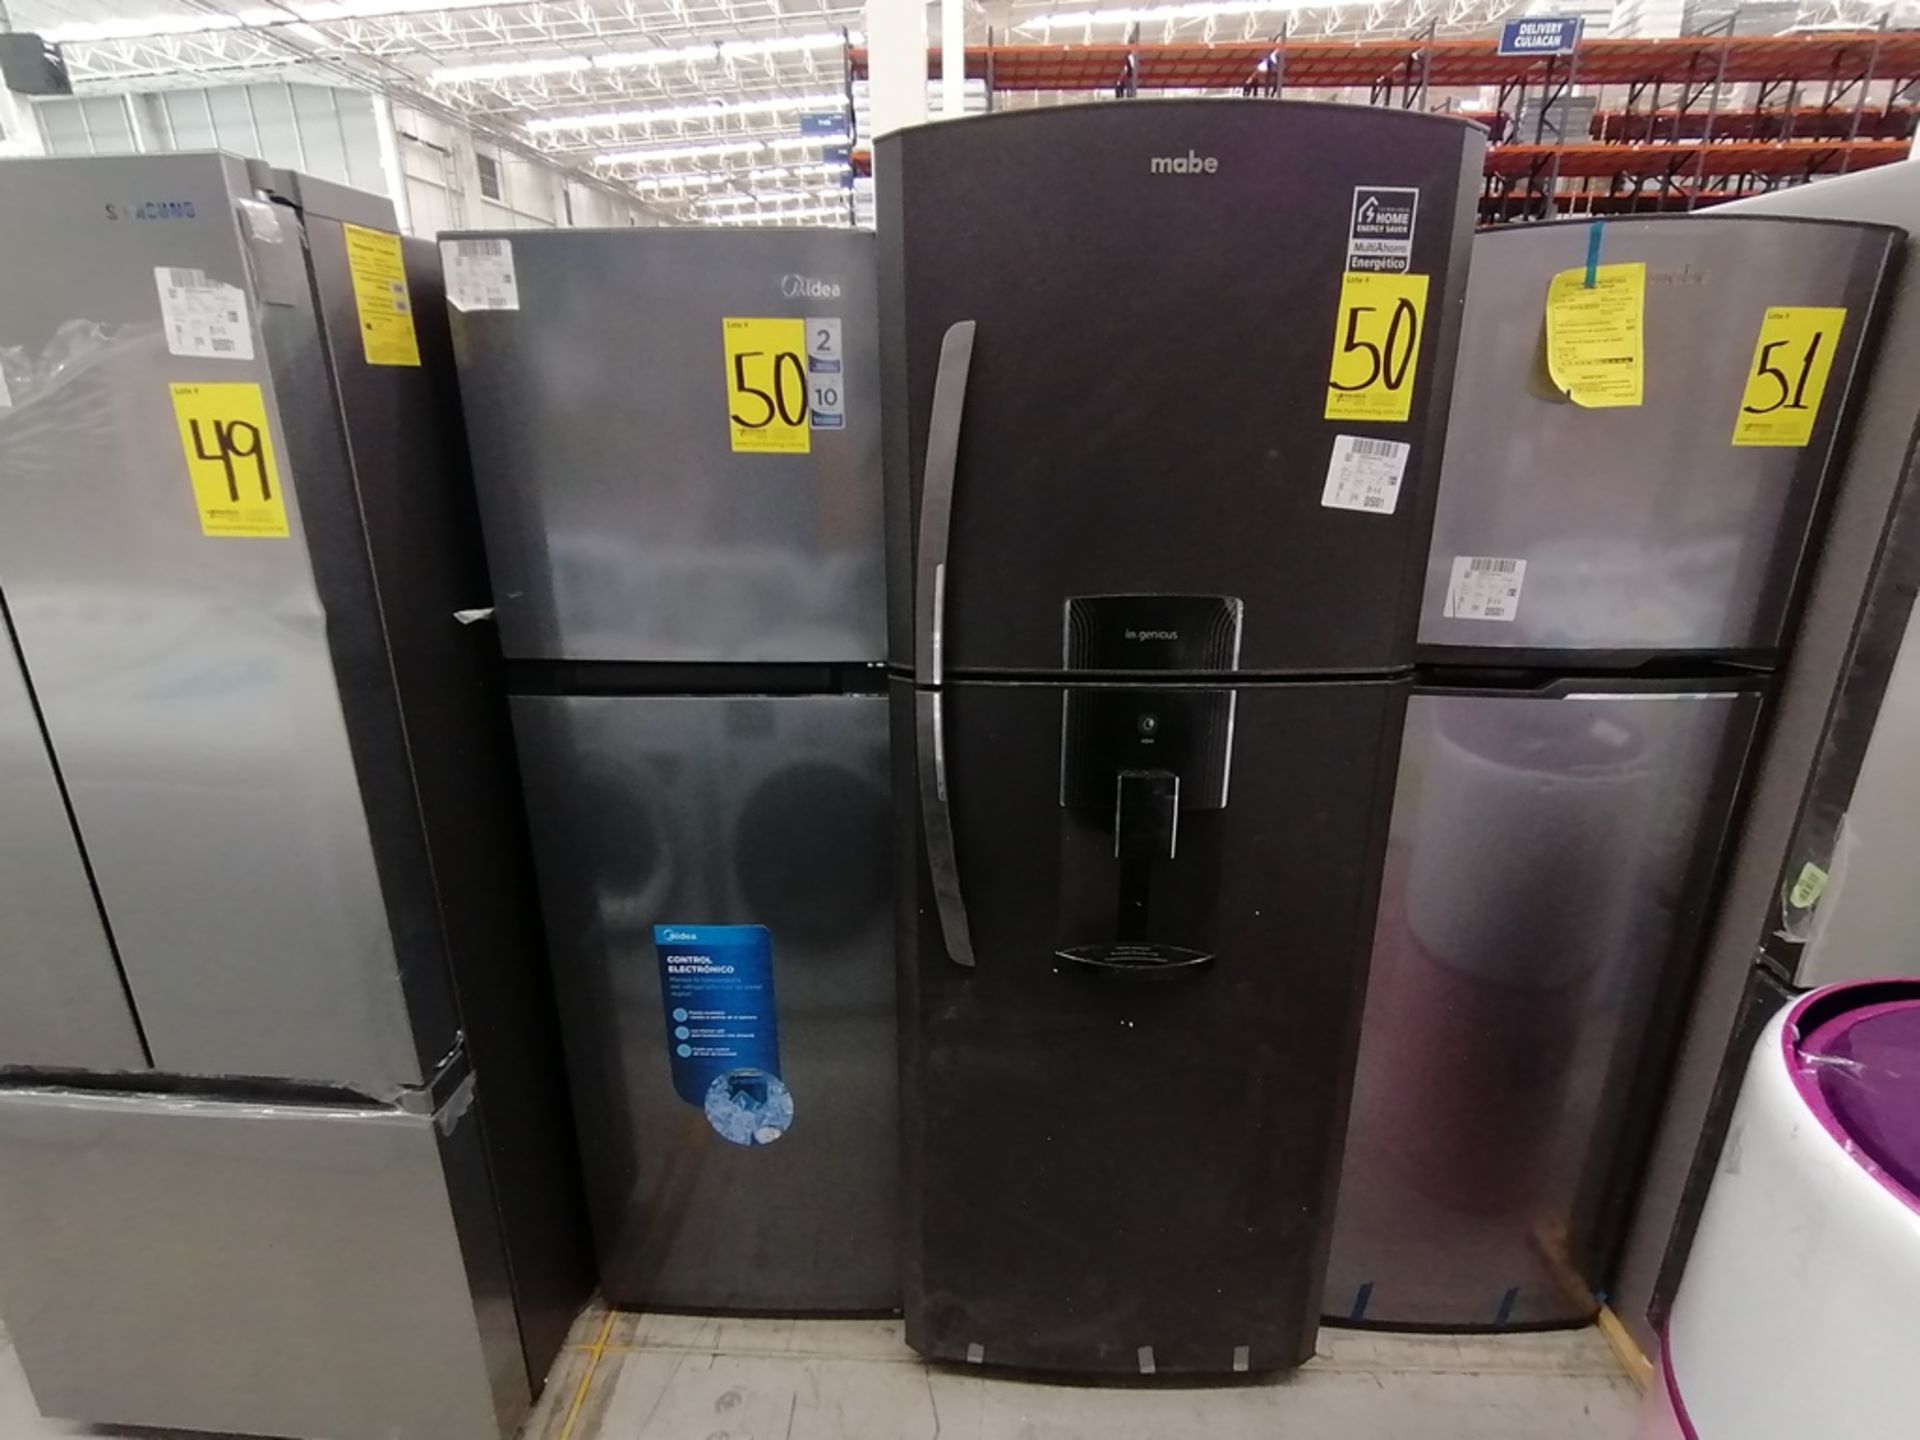 Lote de 2 refrigeradores incluye: 1 Refrigerador, Marca Midea, Modelo MRTN09G2NCS, Serie 341B261870 - Image 3 of 15